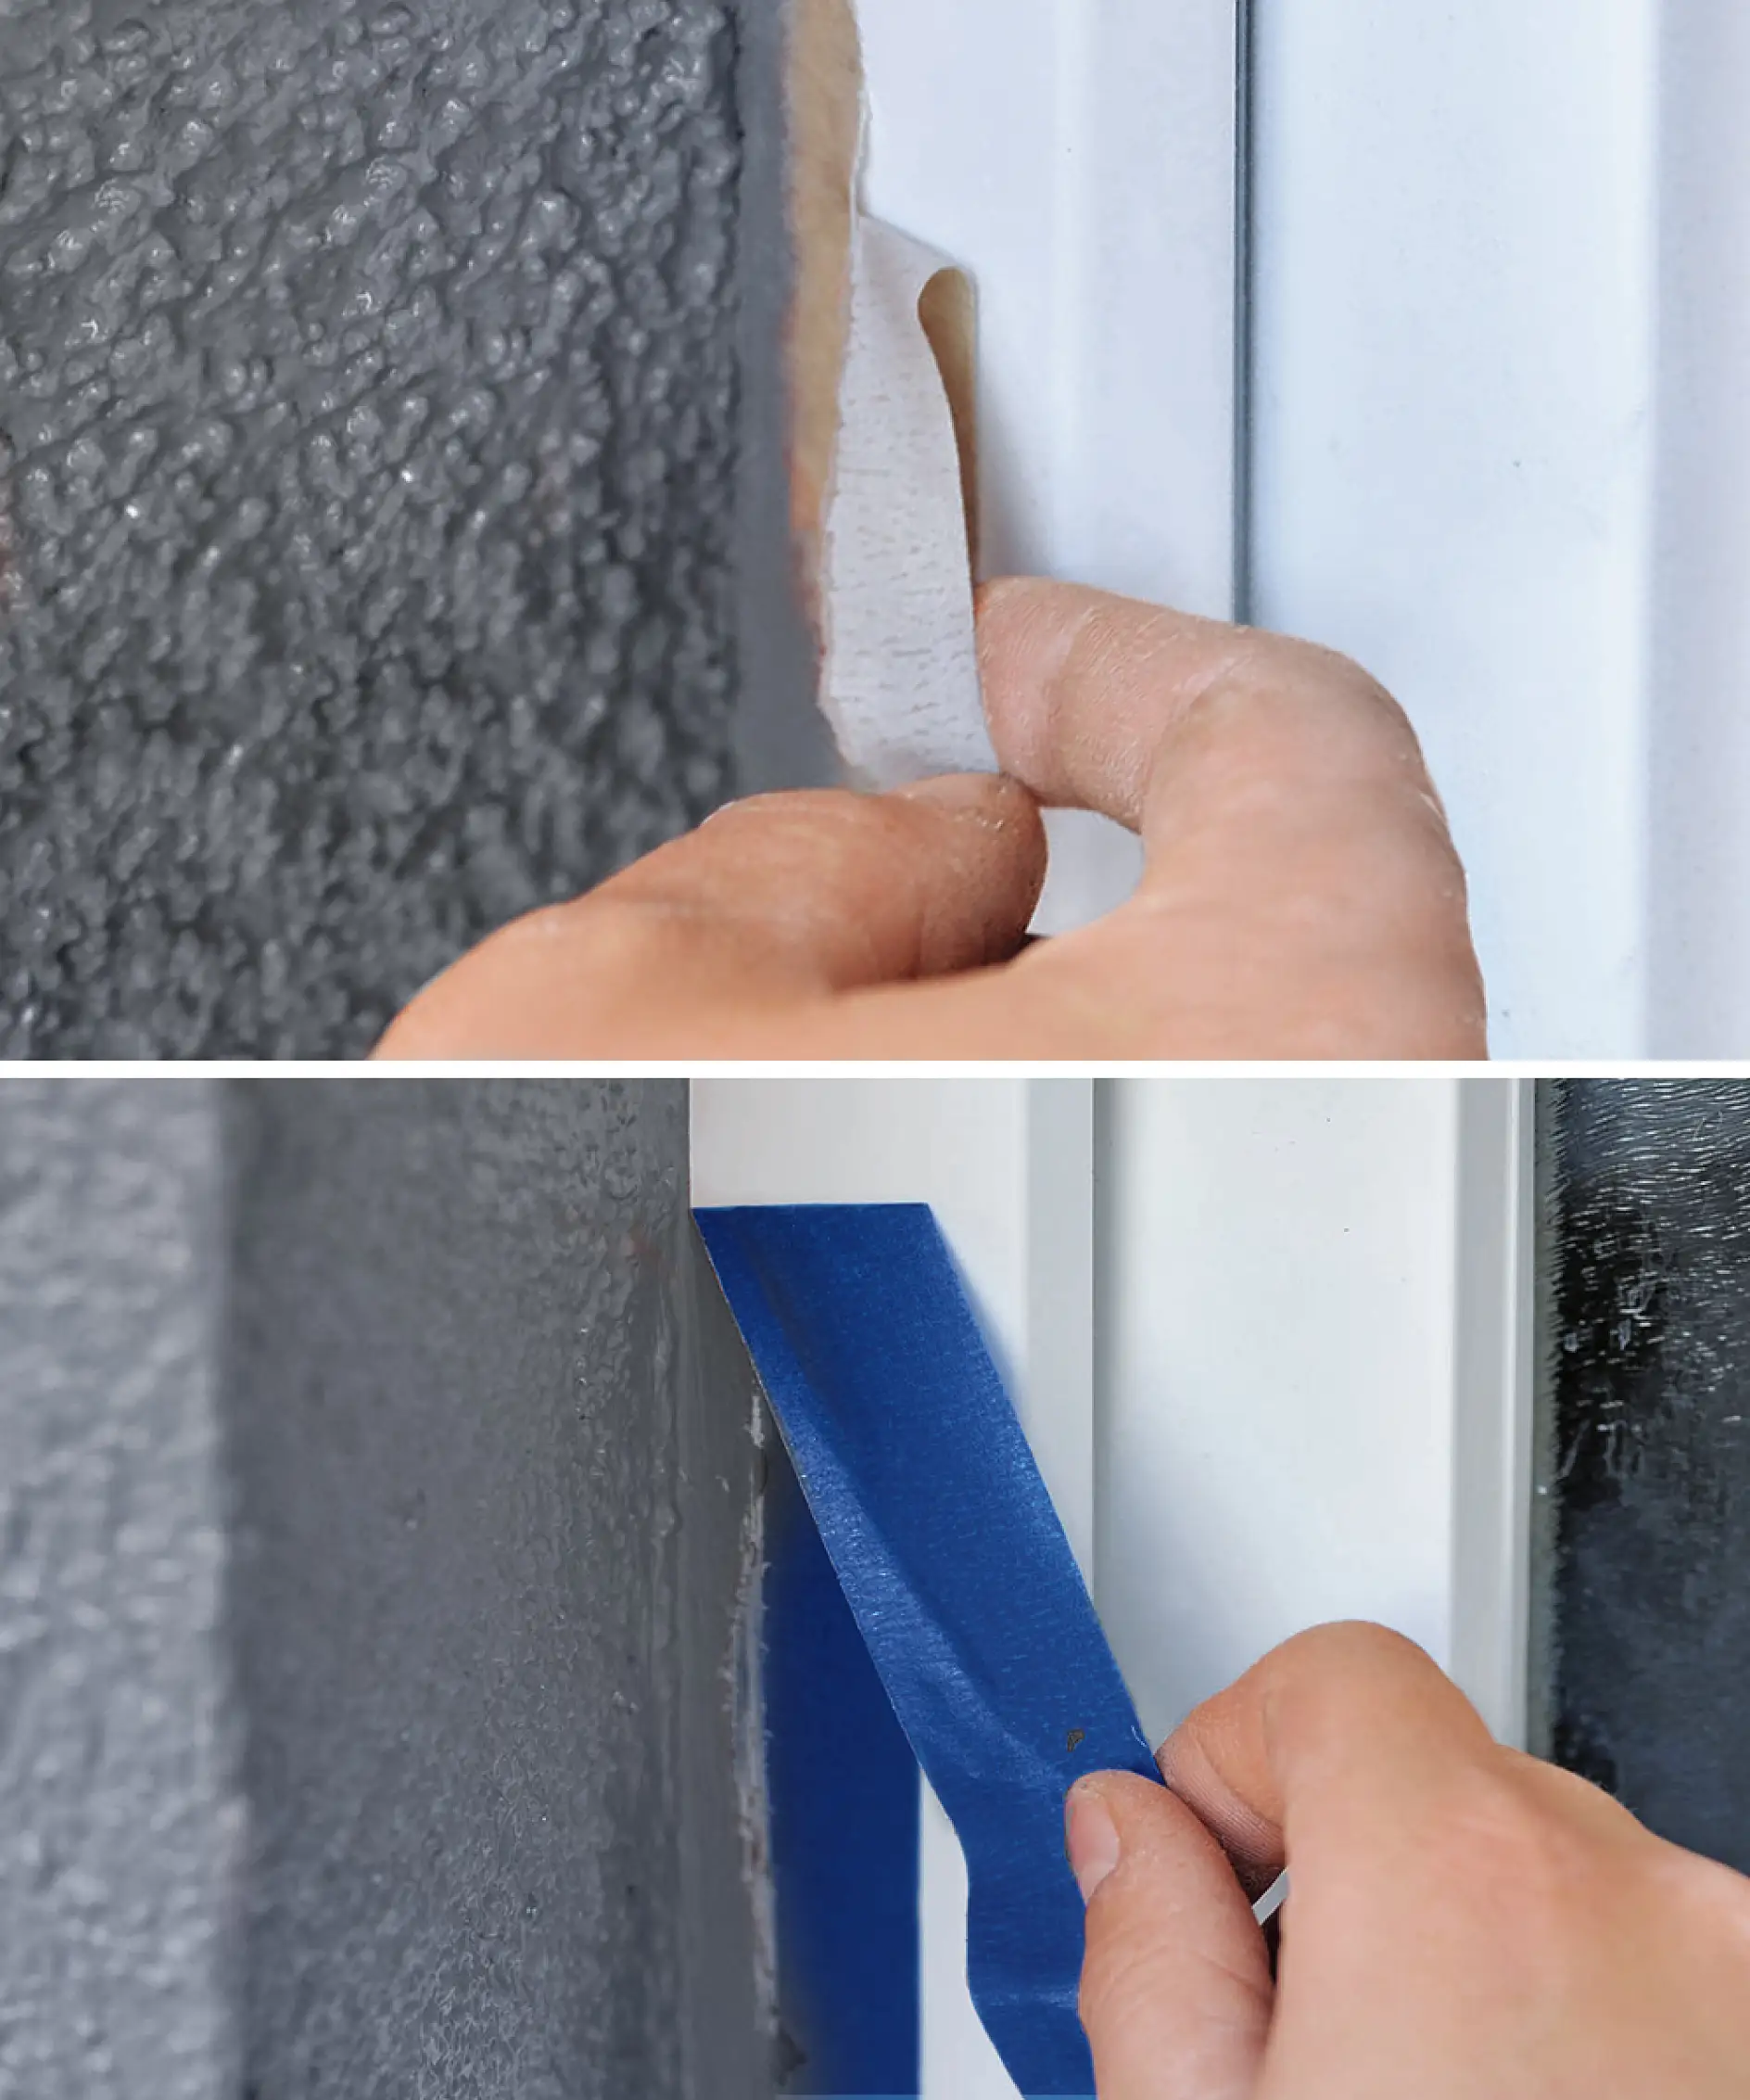 A PVC ablakok maszkolása a rossz szalag használata esetén trükkös lehet.